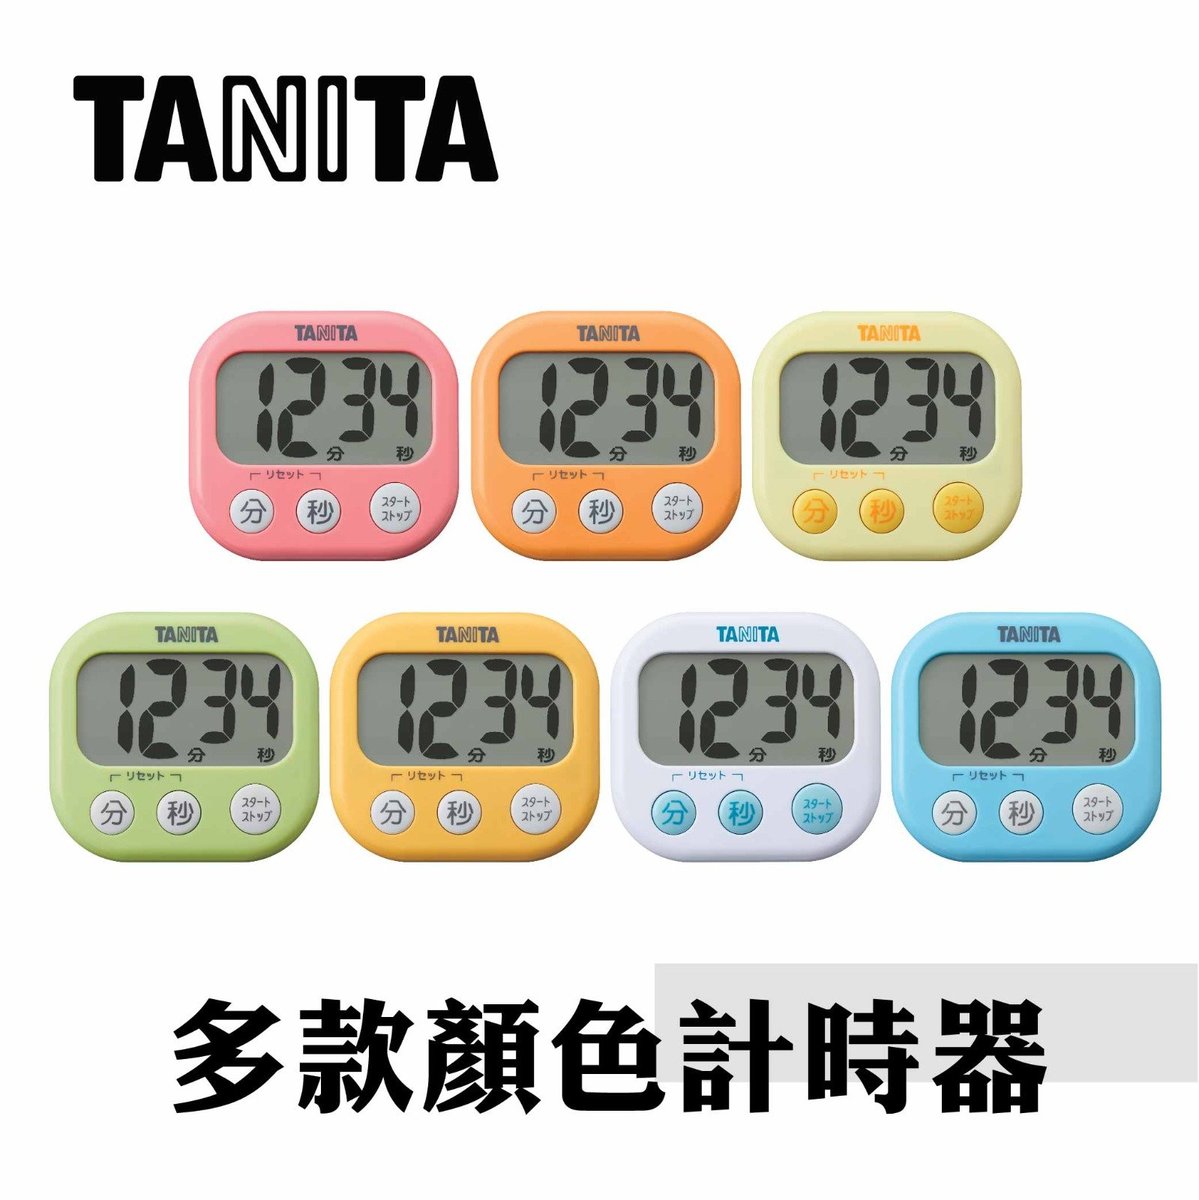 TD-384 電子計時器 (烘焙, 蛋糕, 麵包, 甜品, DIY, 自製, 響鬧, 時尚現代簡約, 行貨) 4 904785 538405